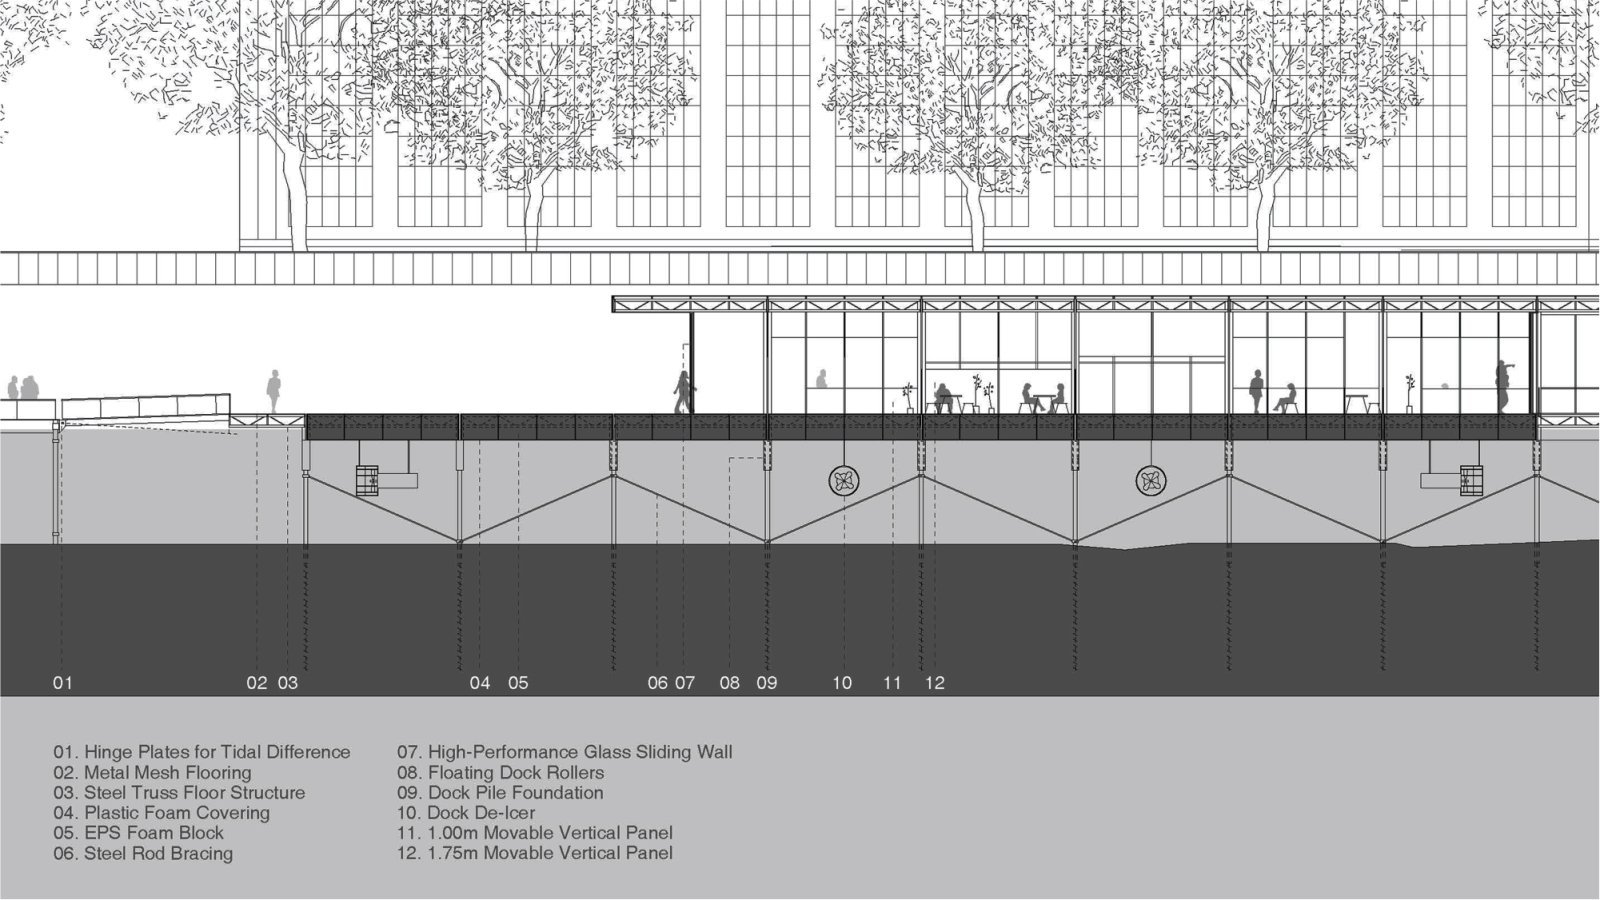 گالری عکس 11 طرح پیشنهادی MIT i2 از Suk Lee  عکس طراحی شهری عکس فضا در معماری عکس مجموعه فرهنگی عکس معماری آمریکا عکس معماری شهری